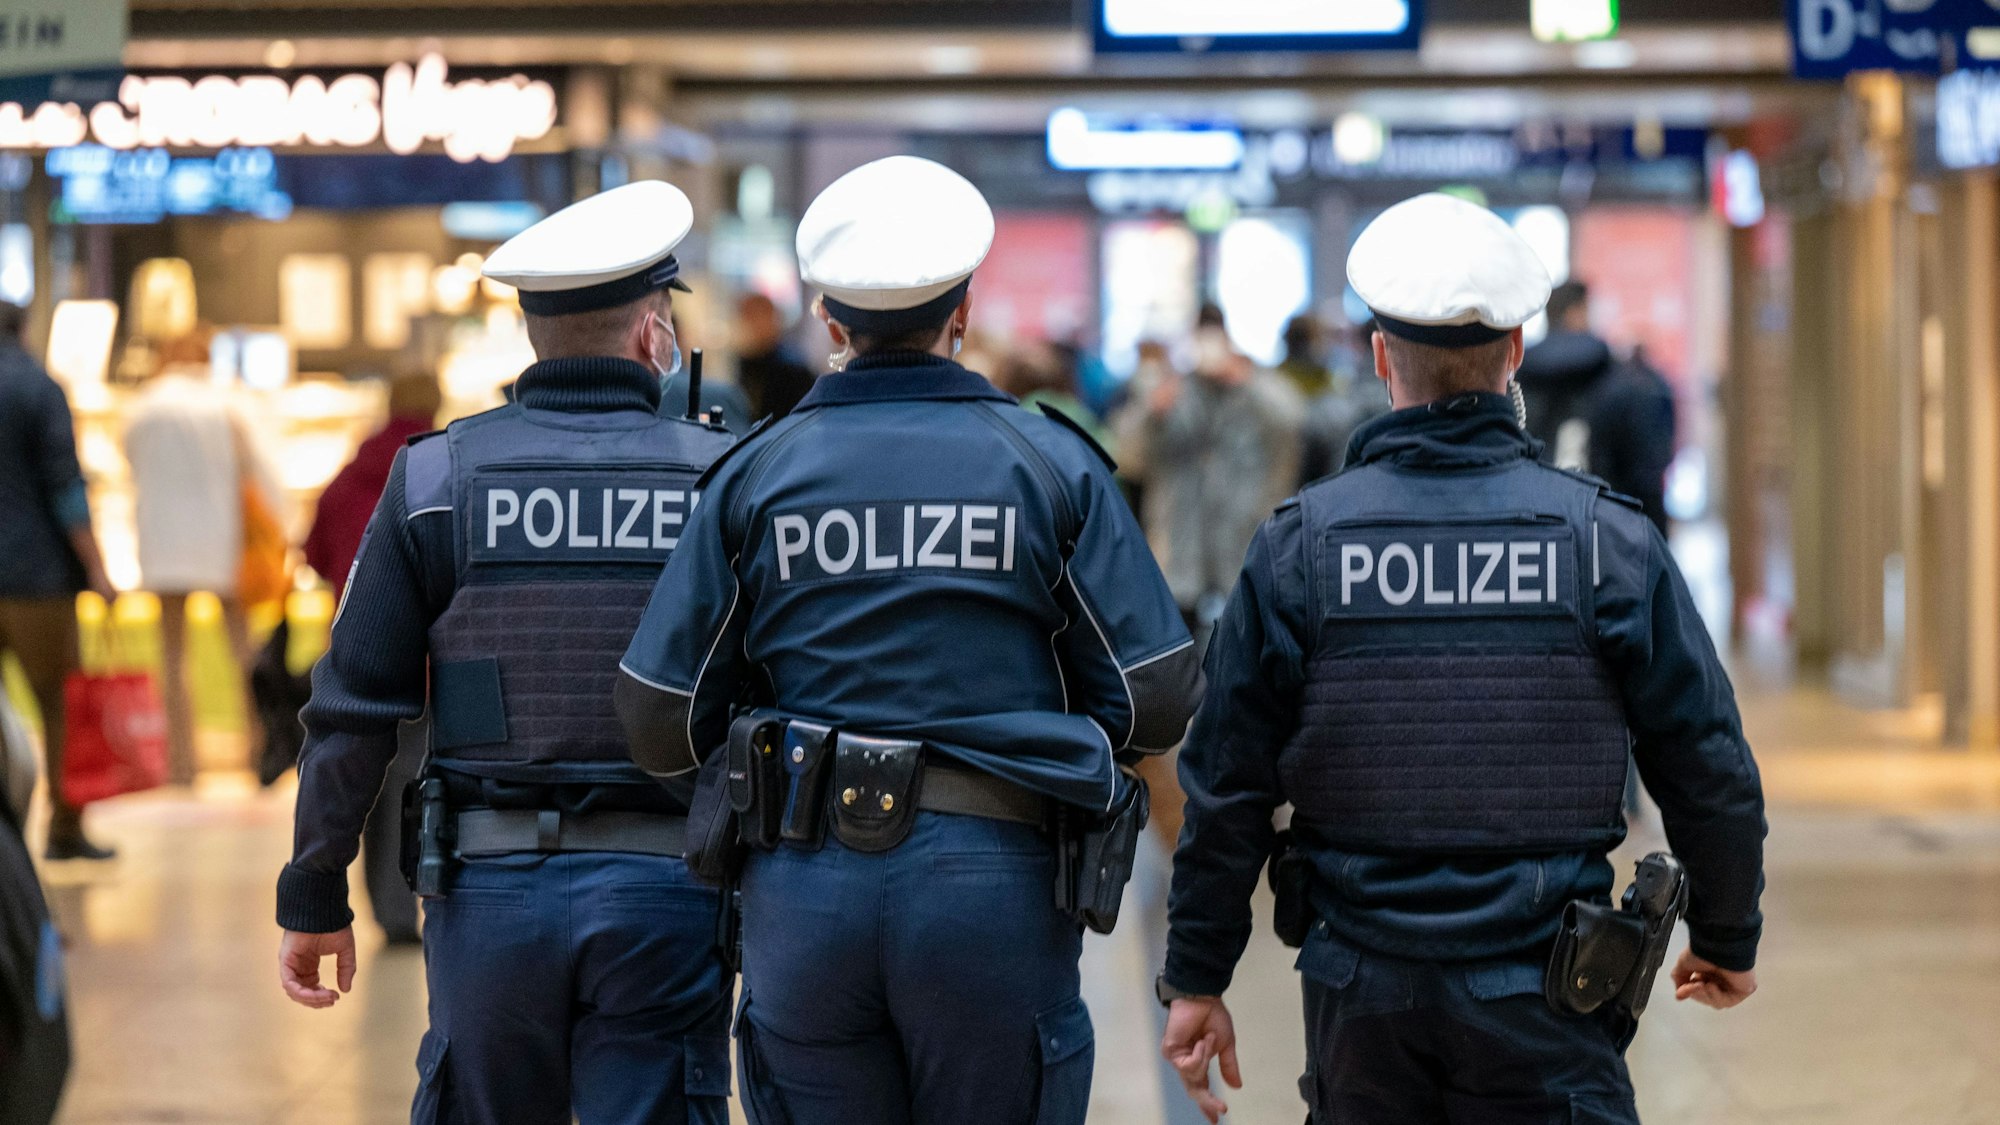 Polizeibeamte patroullieren im Kölner Hauptbahnhof